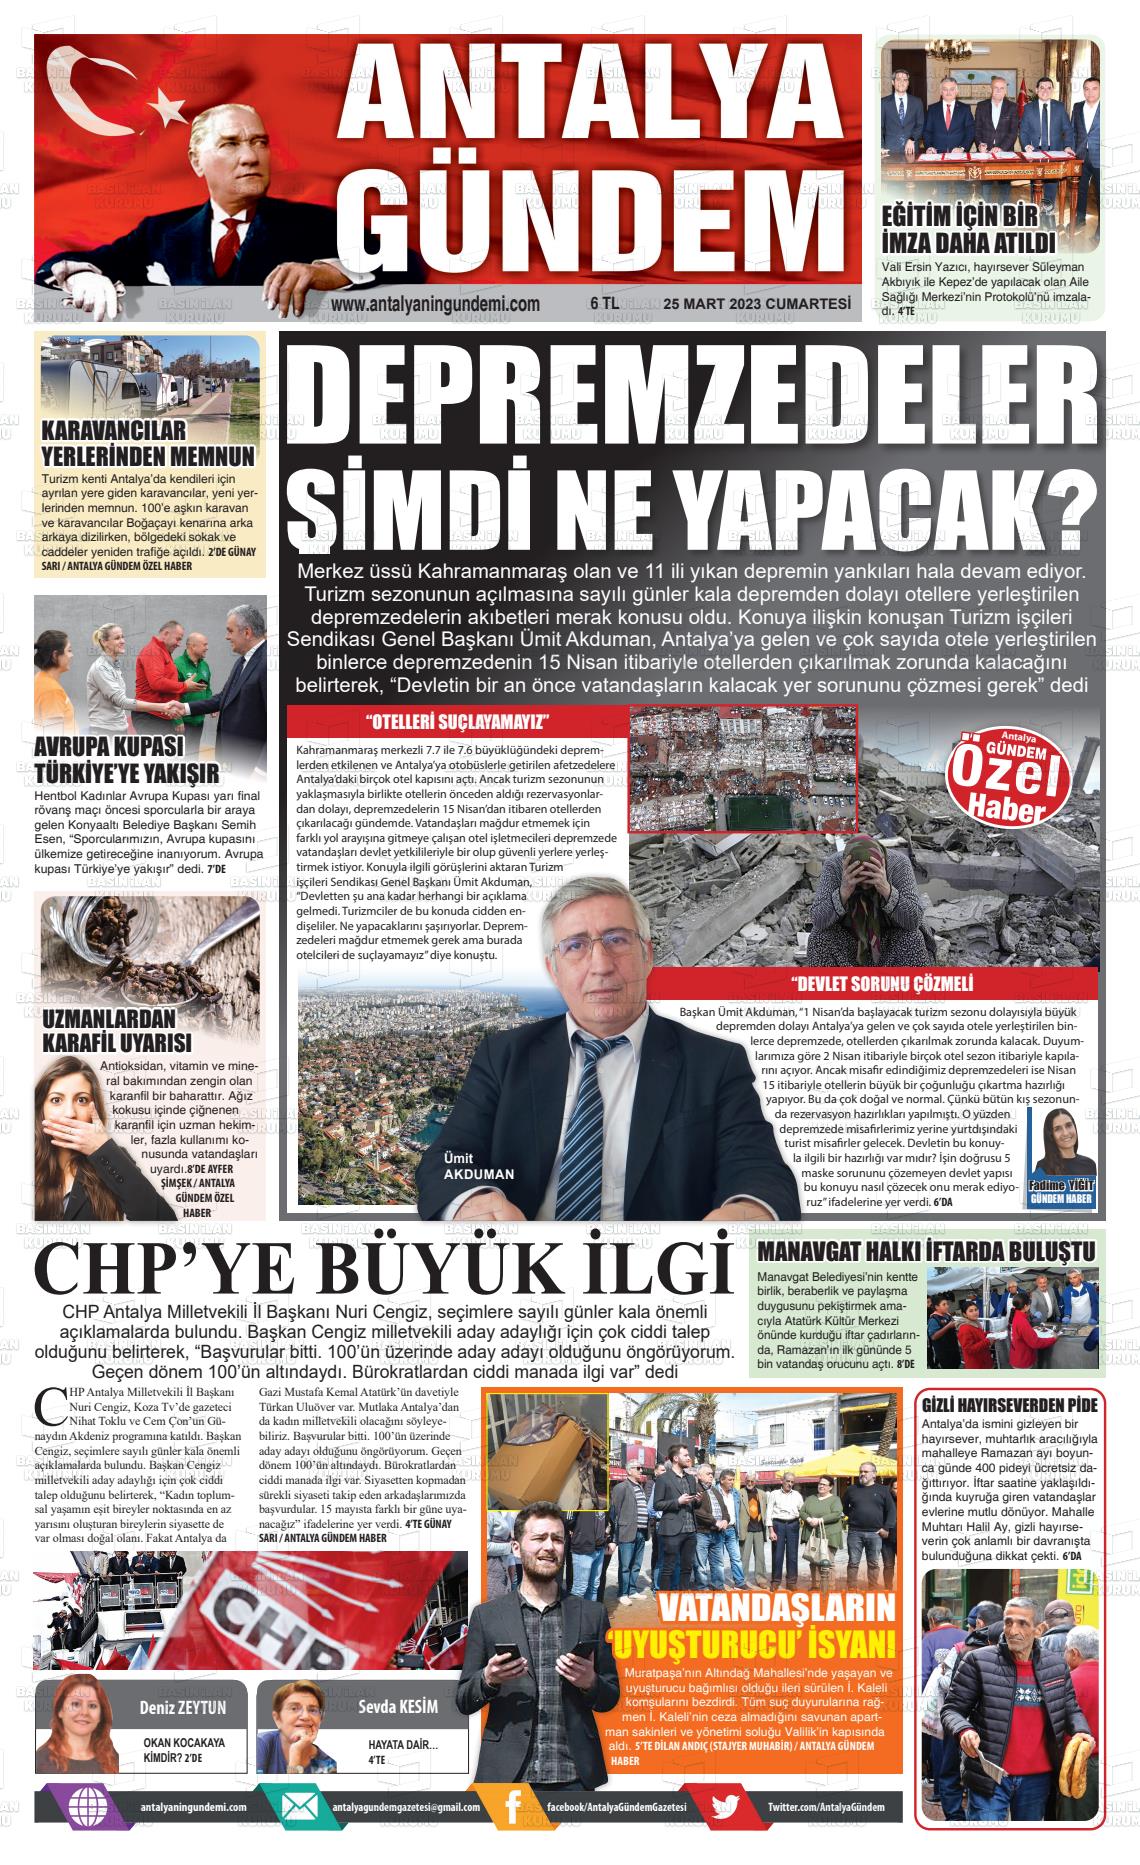 25 Mart 2023 Antalya'nın Gündemi Gazete Manşeti